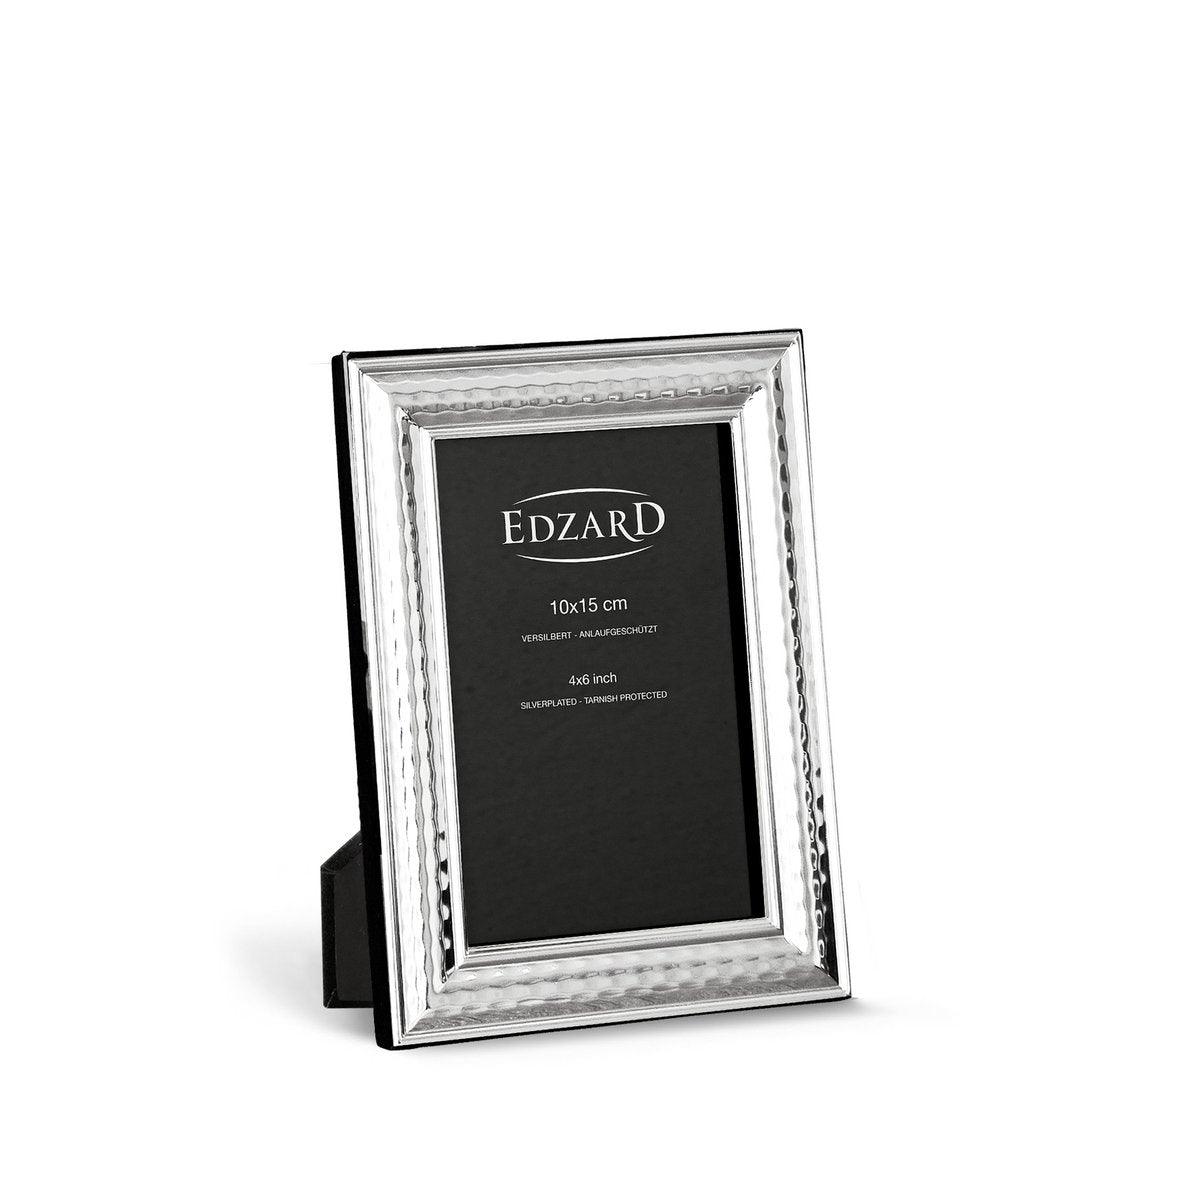 EDZARD Fotorahmen Urbino für Foto 10 x 15 cm, edel versilbert, anlaufgeschützt, mit 2 Aufhängern - HomeDesign Knaus